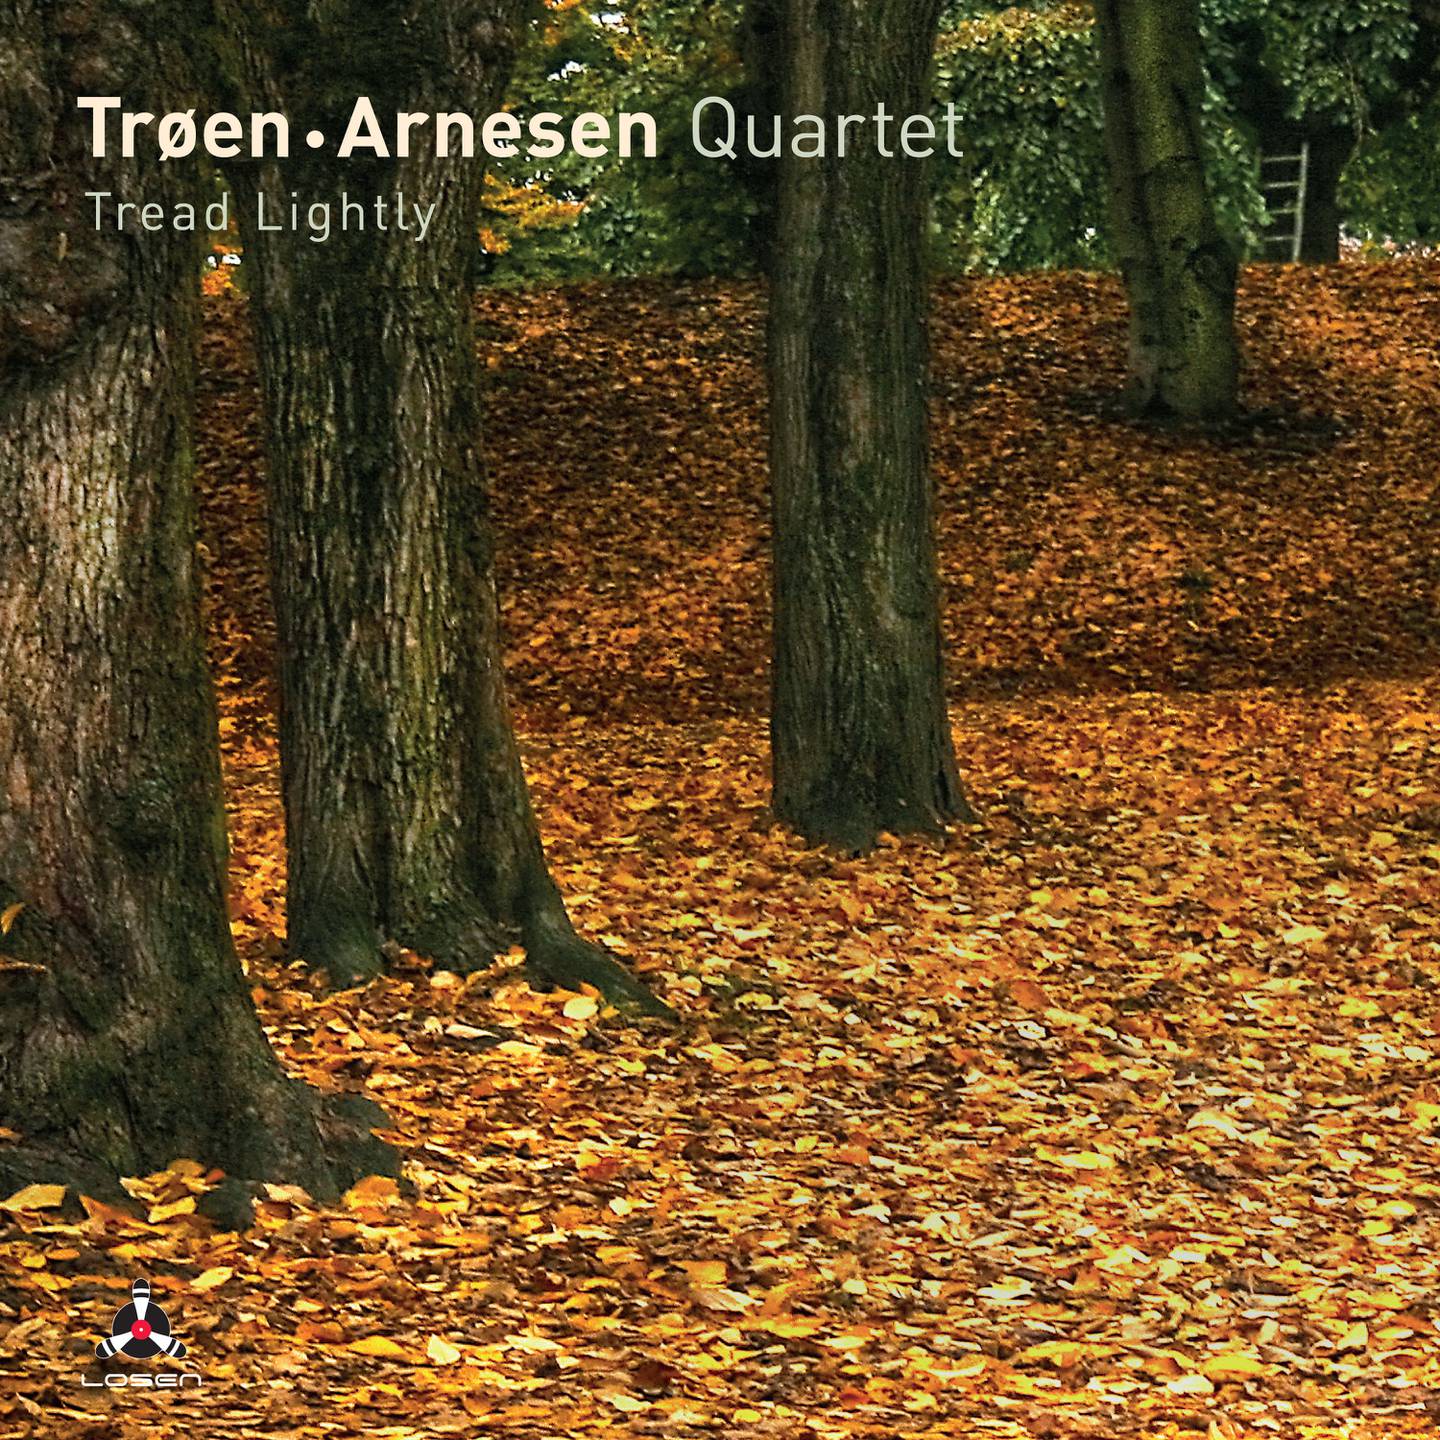 Trøen/Arnesen Quartet: Tread Lightly